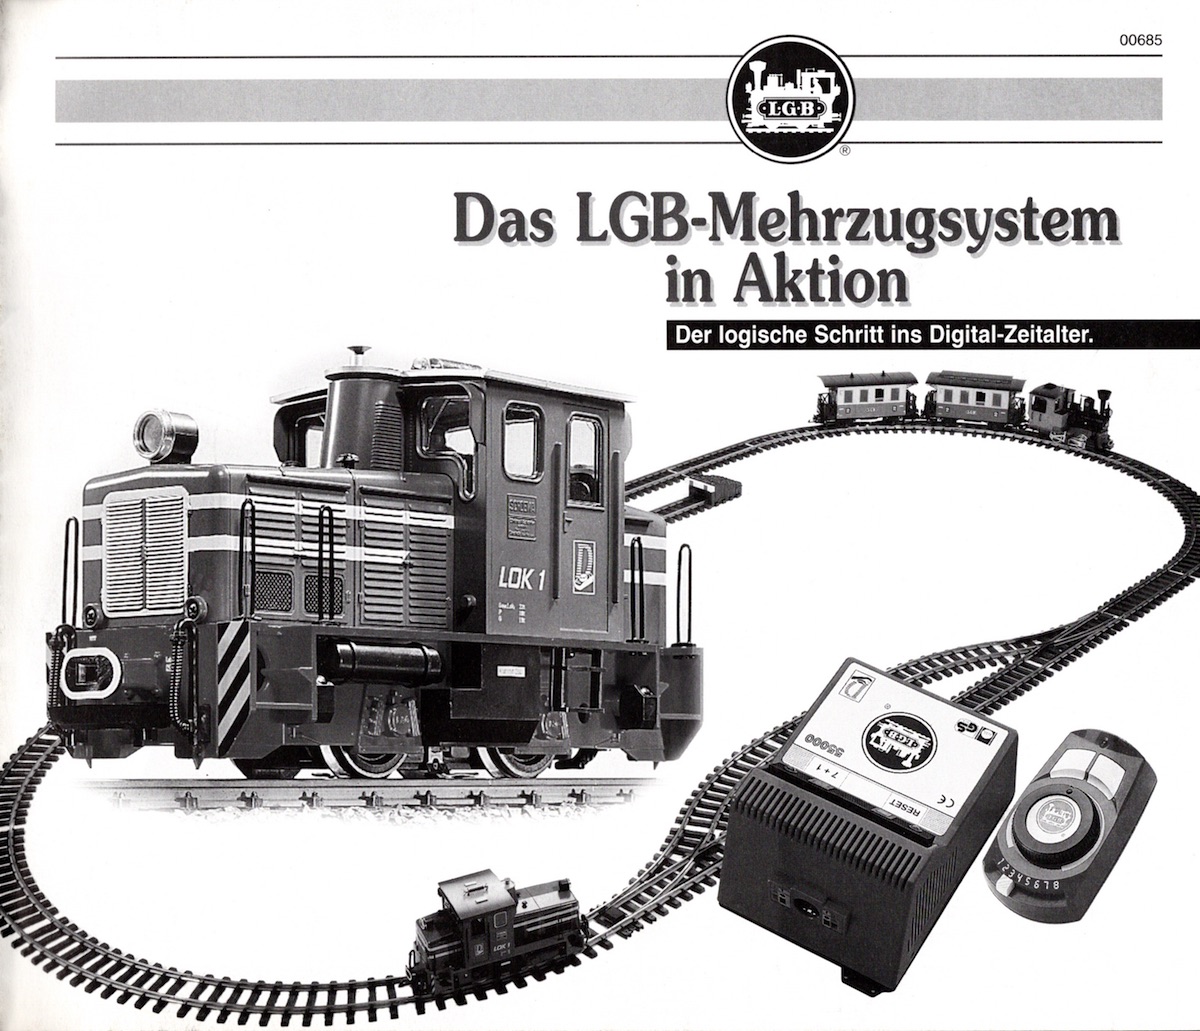 LGB Broschüre (Flyer) 2000 - Das LGB Mehrzugsystem in Aktion, schwarz-weiß, Deutsch